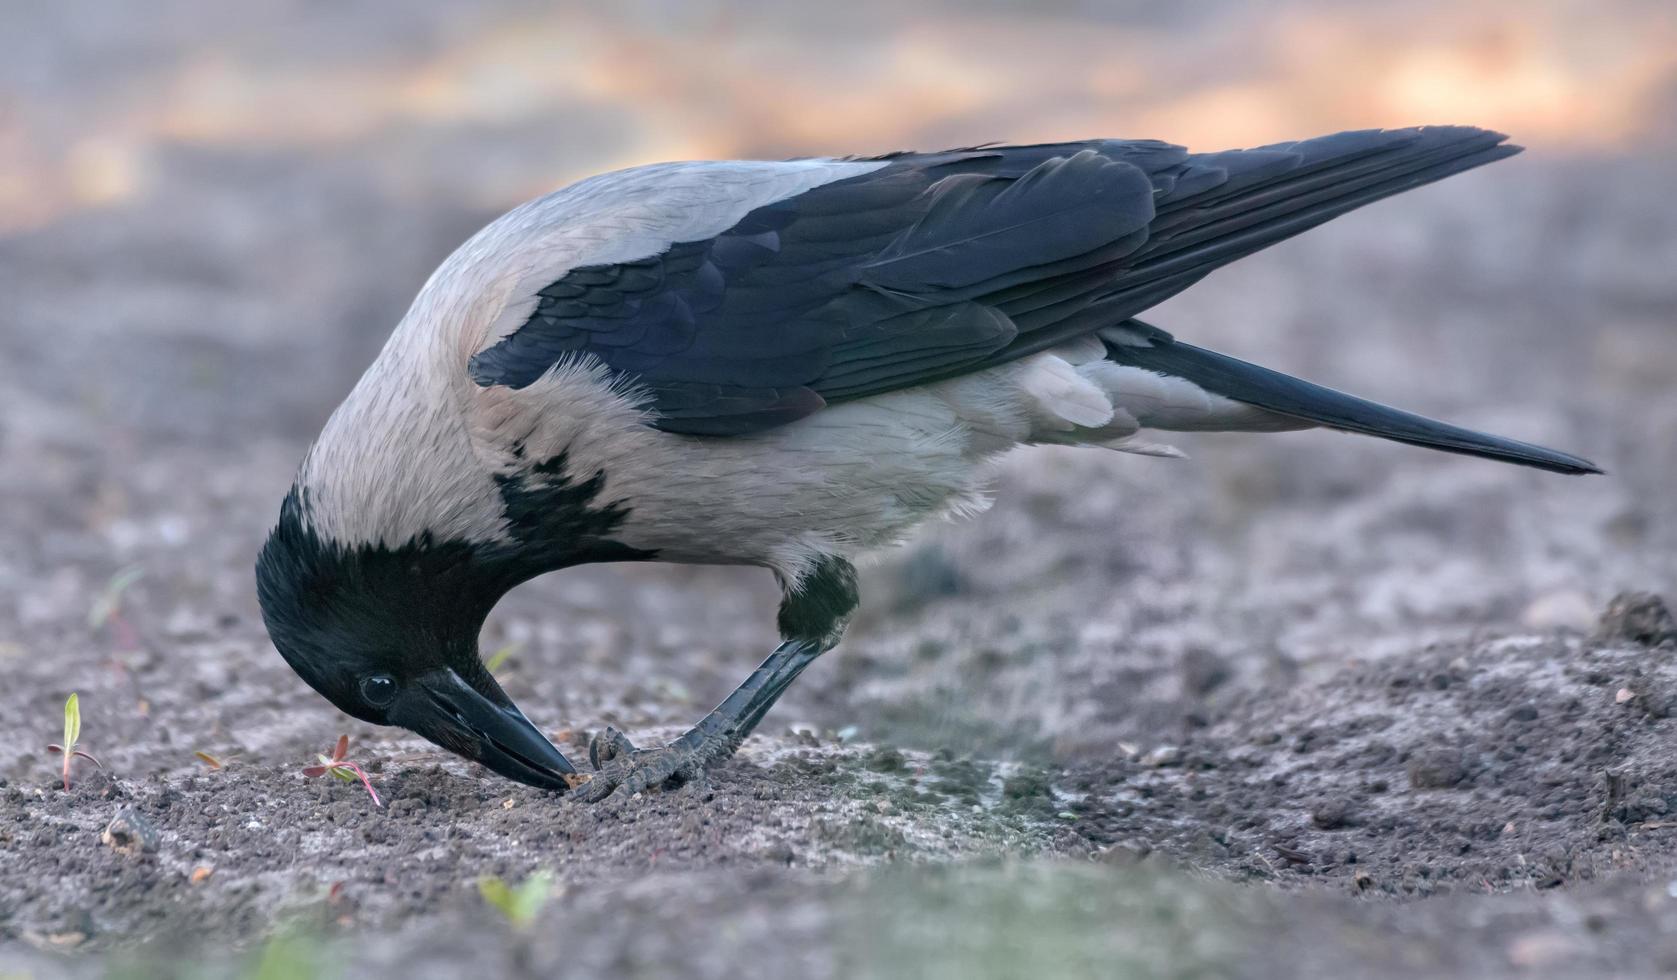 encapuchonné corbeau - corvus cornix - alimente avec le bec et pieds sur boueux sol dans de bonne heure printemps photo